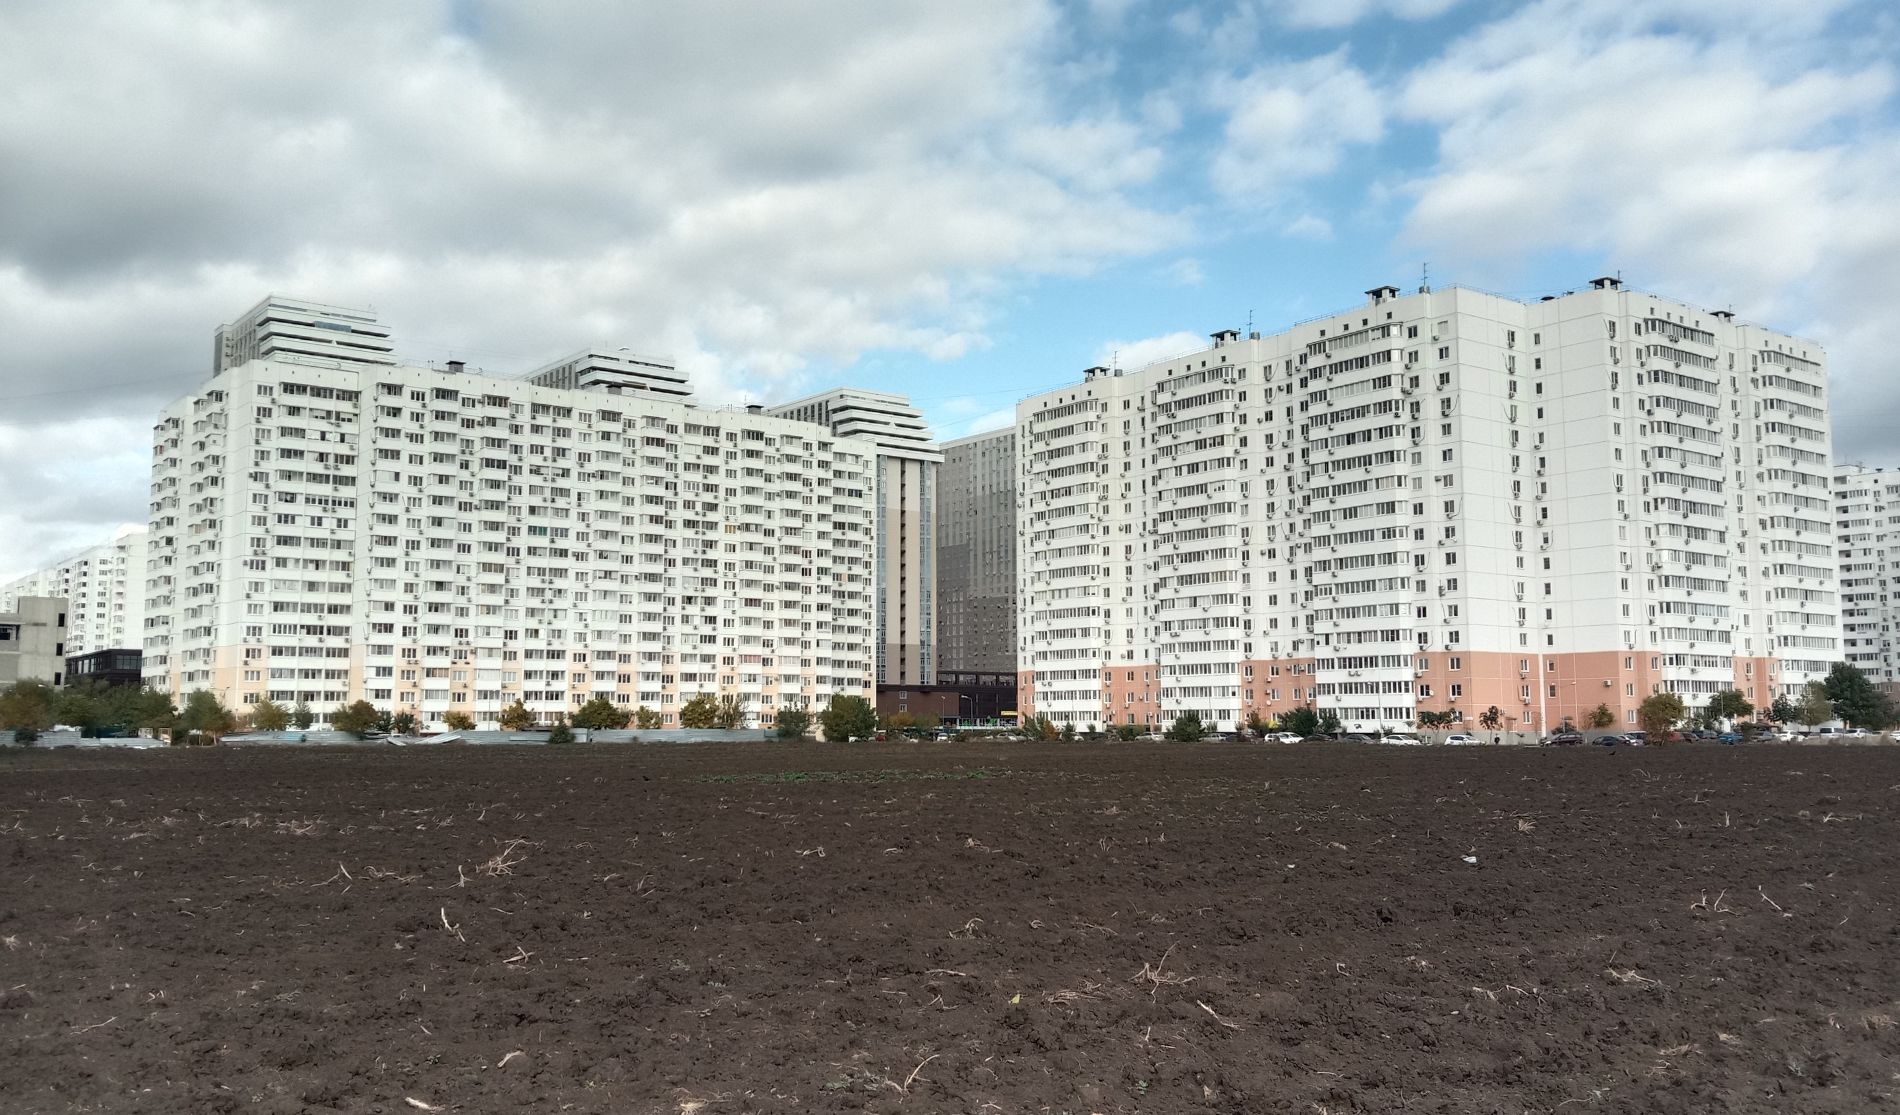 Опытное поле и многоэтажки, которые превратили «отшиб» в оживлённый район © Фото Яры Гуляевой, Юга.ру